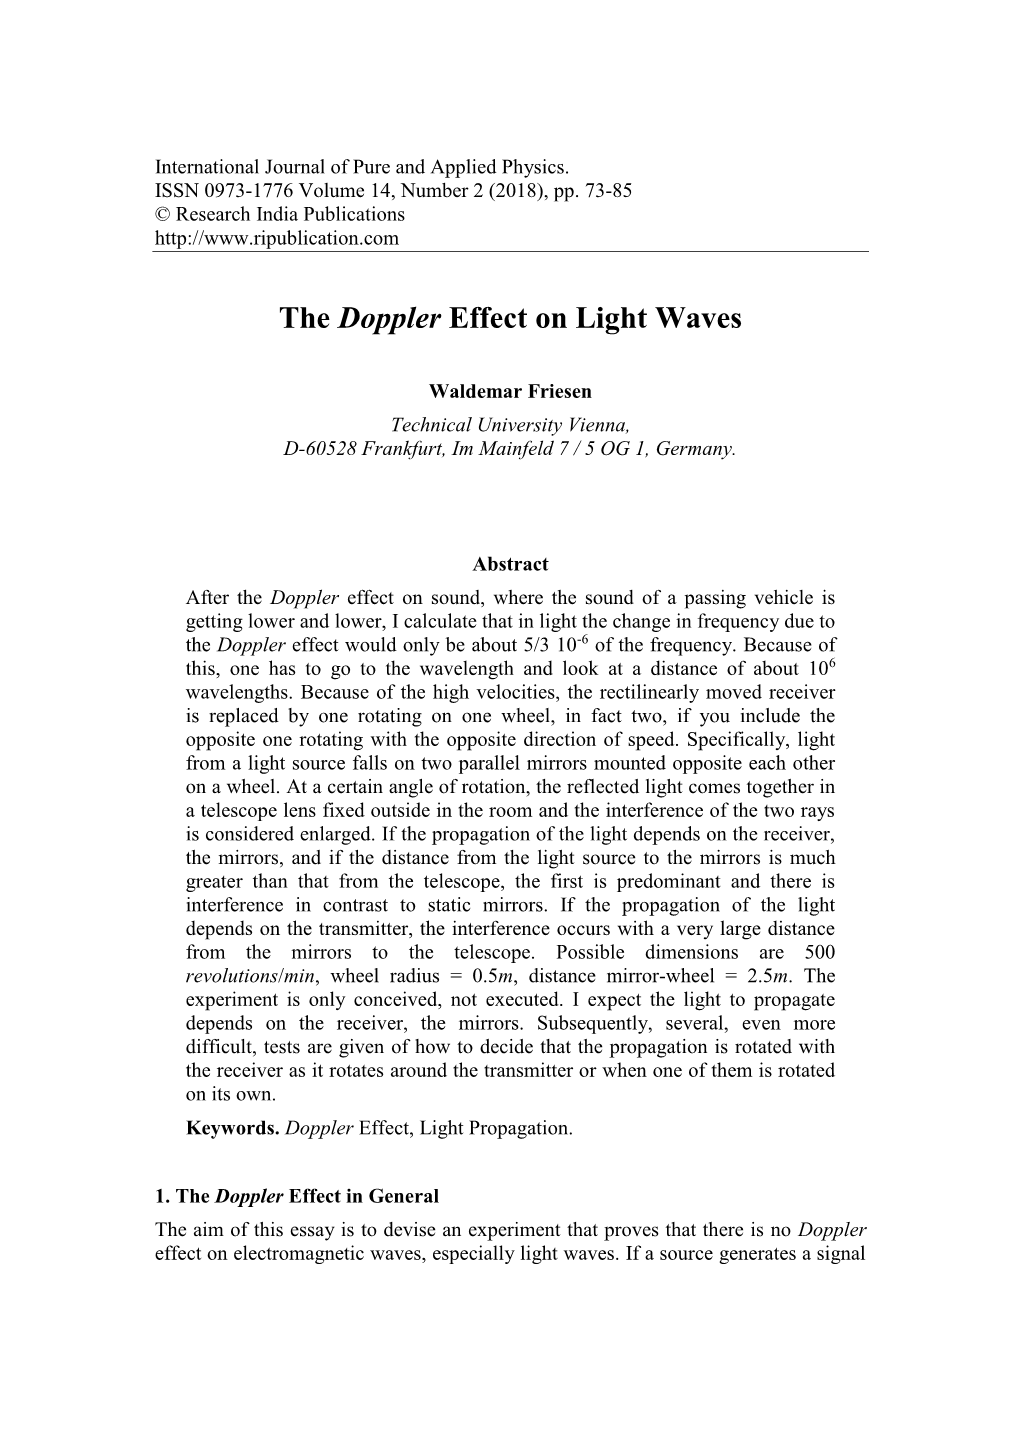 The Doppler Effect on Light Waves